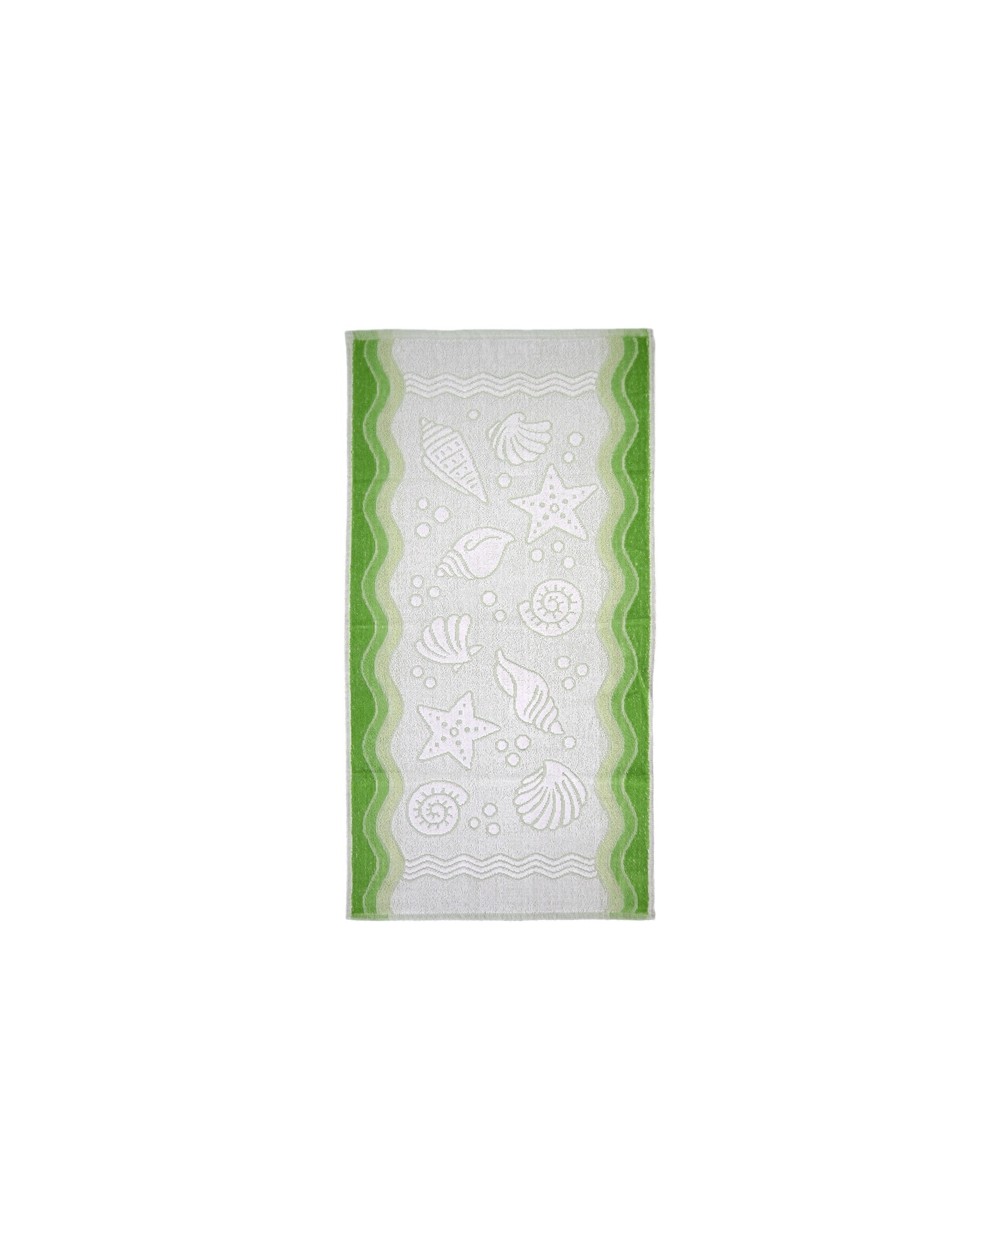 Ręcznik Flora Ocean bawełna 50x100 zielony